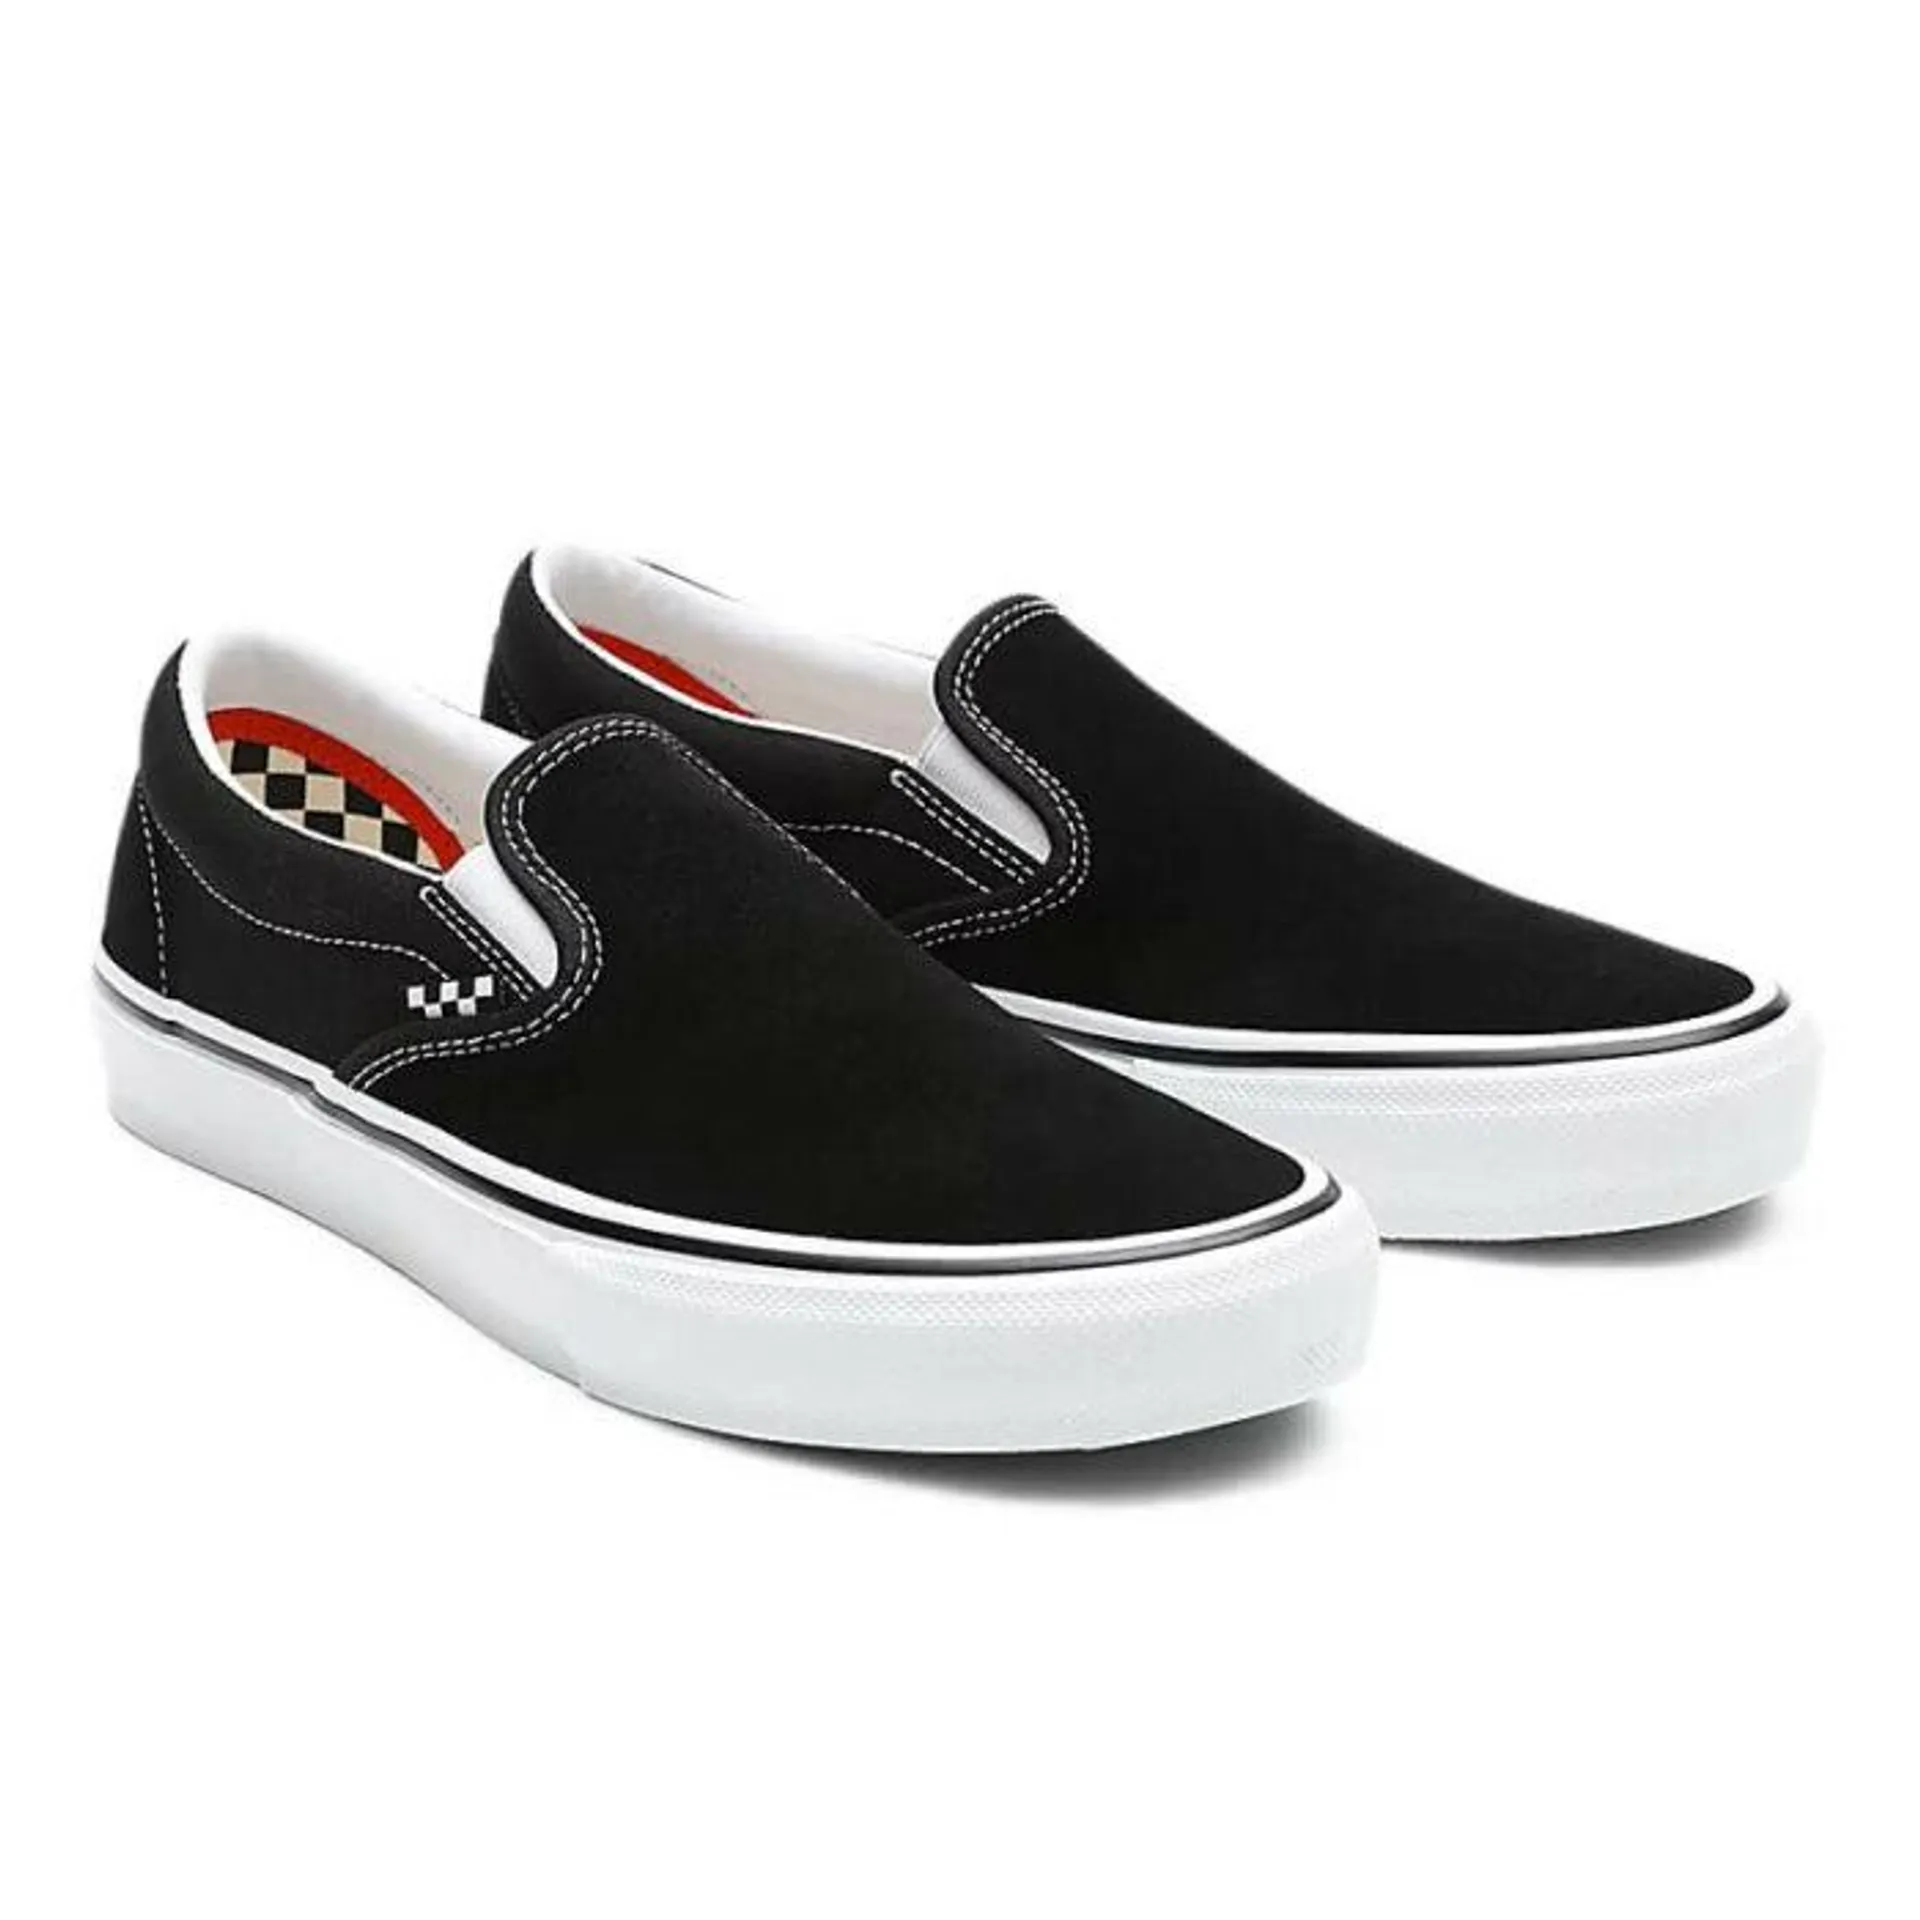 Zapatos Vans Skate Slip-On Black White